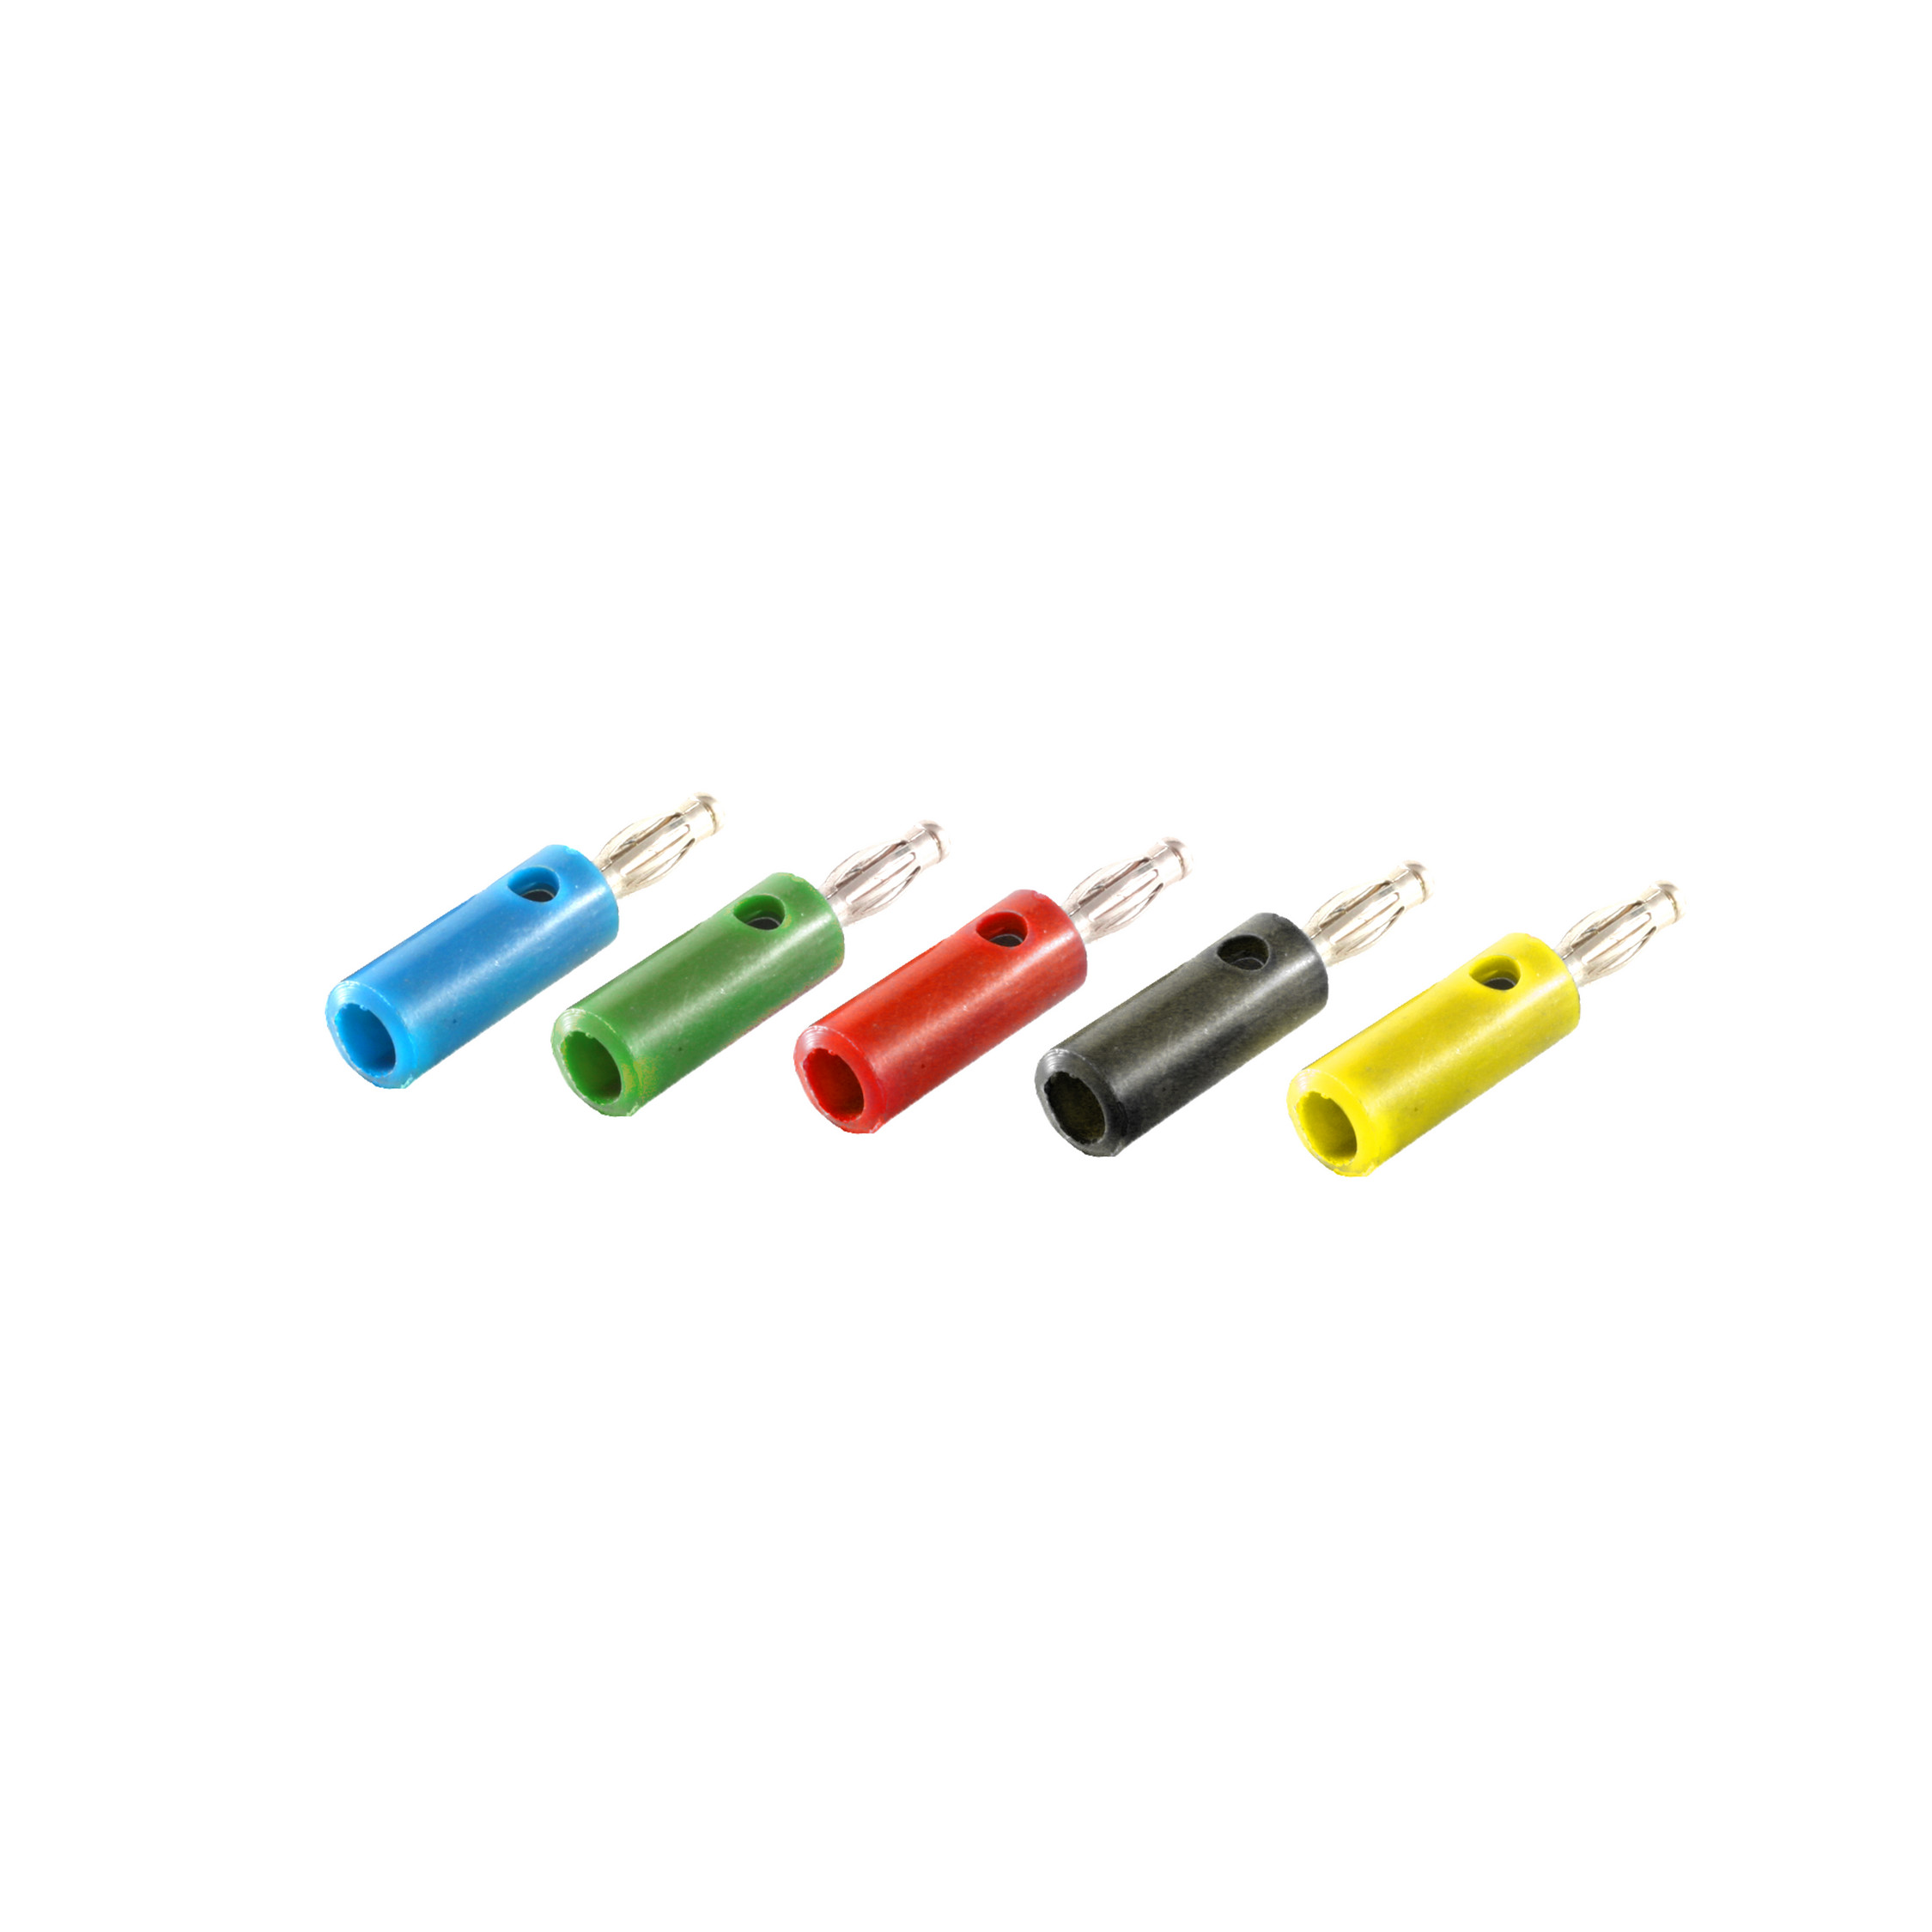 SHIVERPEAKS Bananenstecker 5 Stecker/ teilig blau+gelb+grün+rot+sw, Adapter